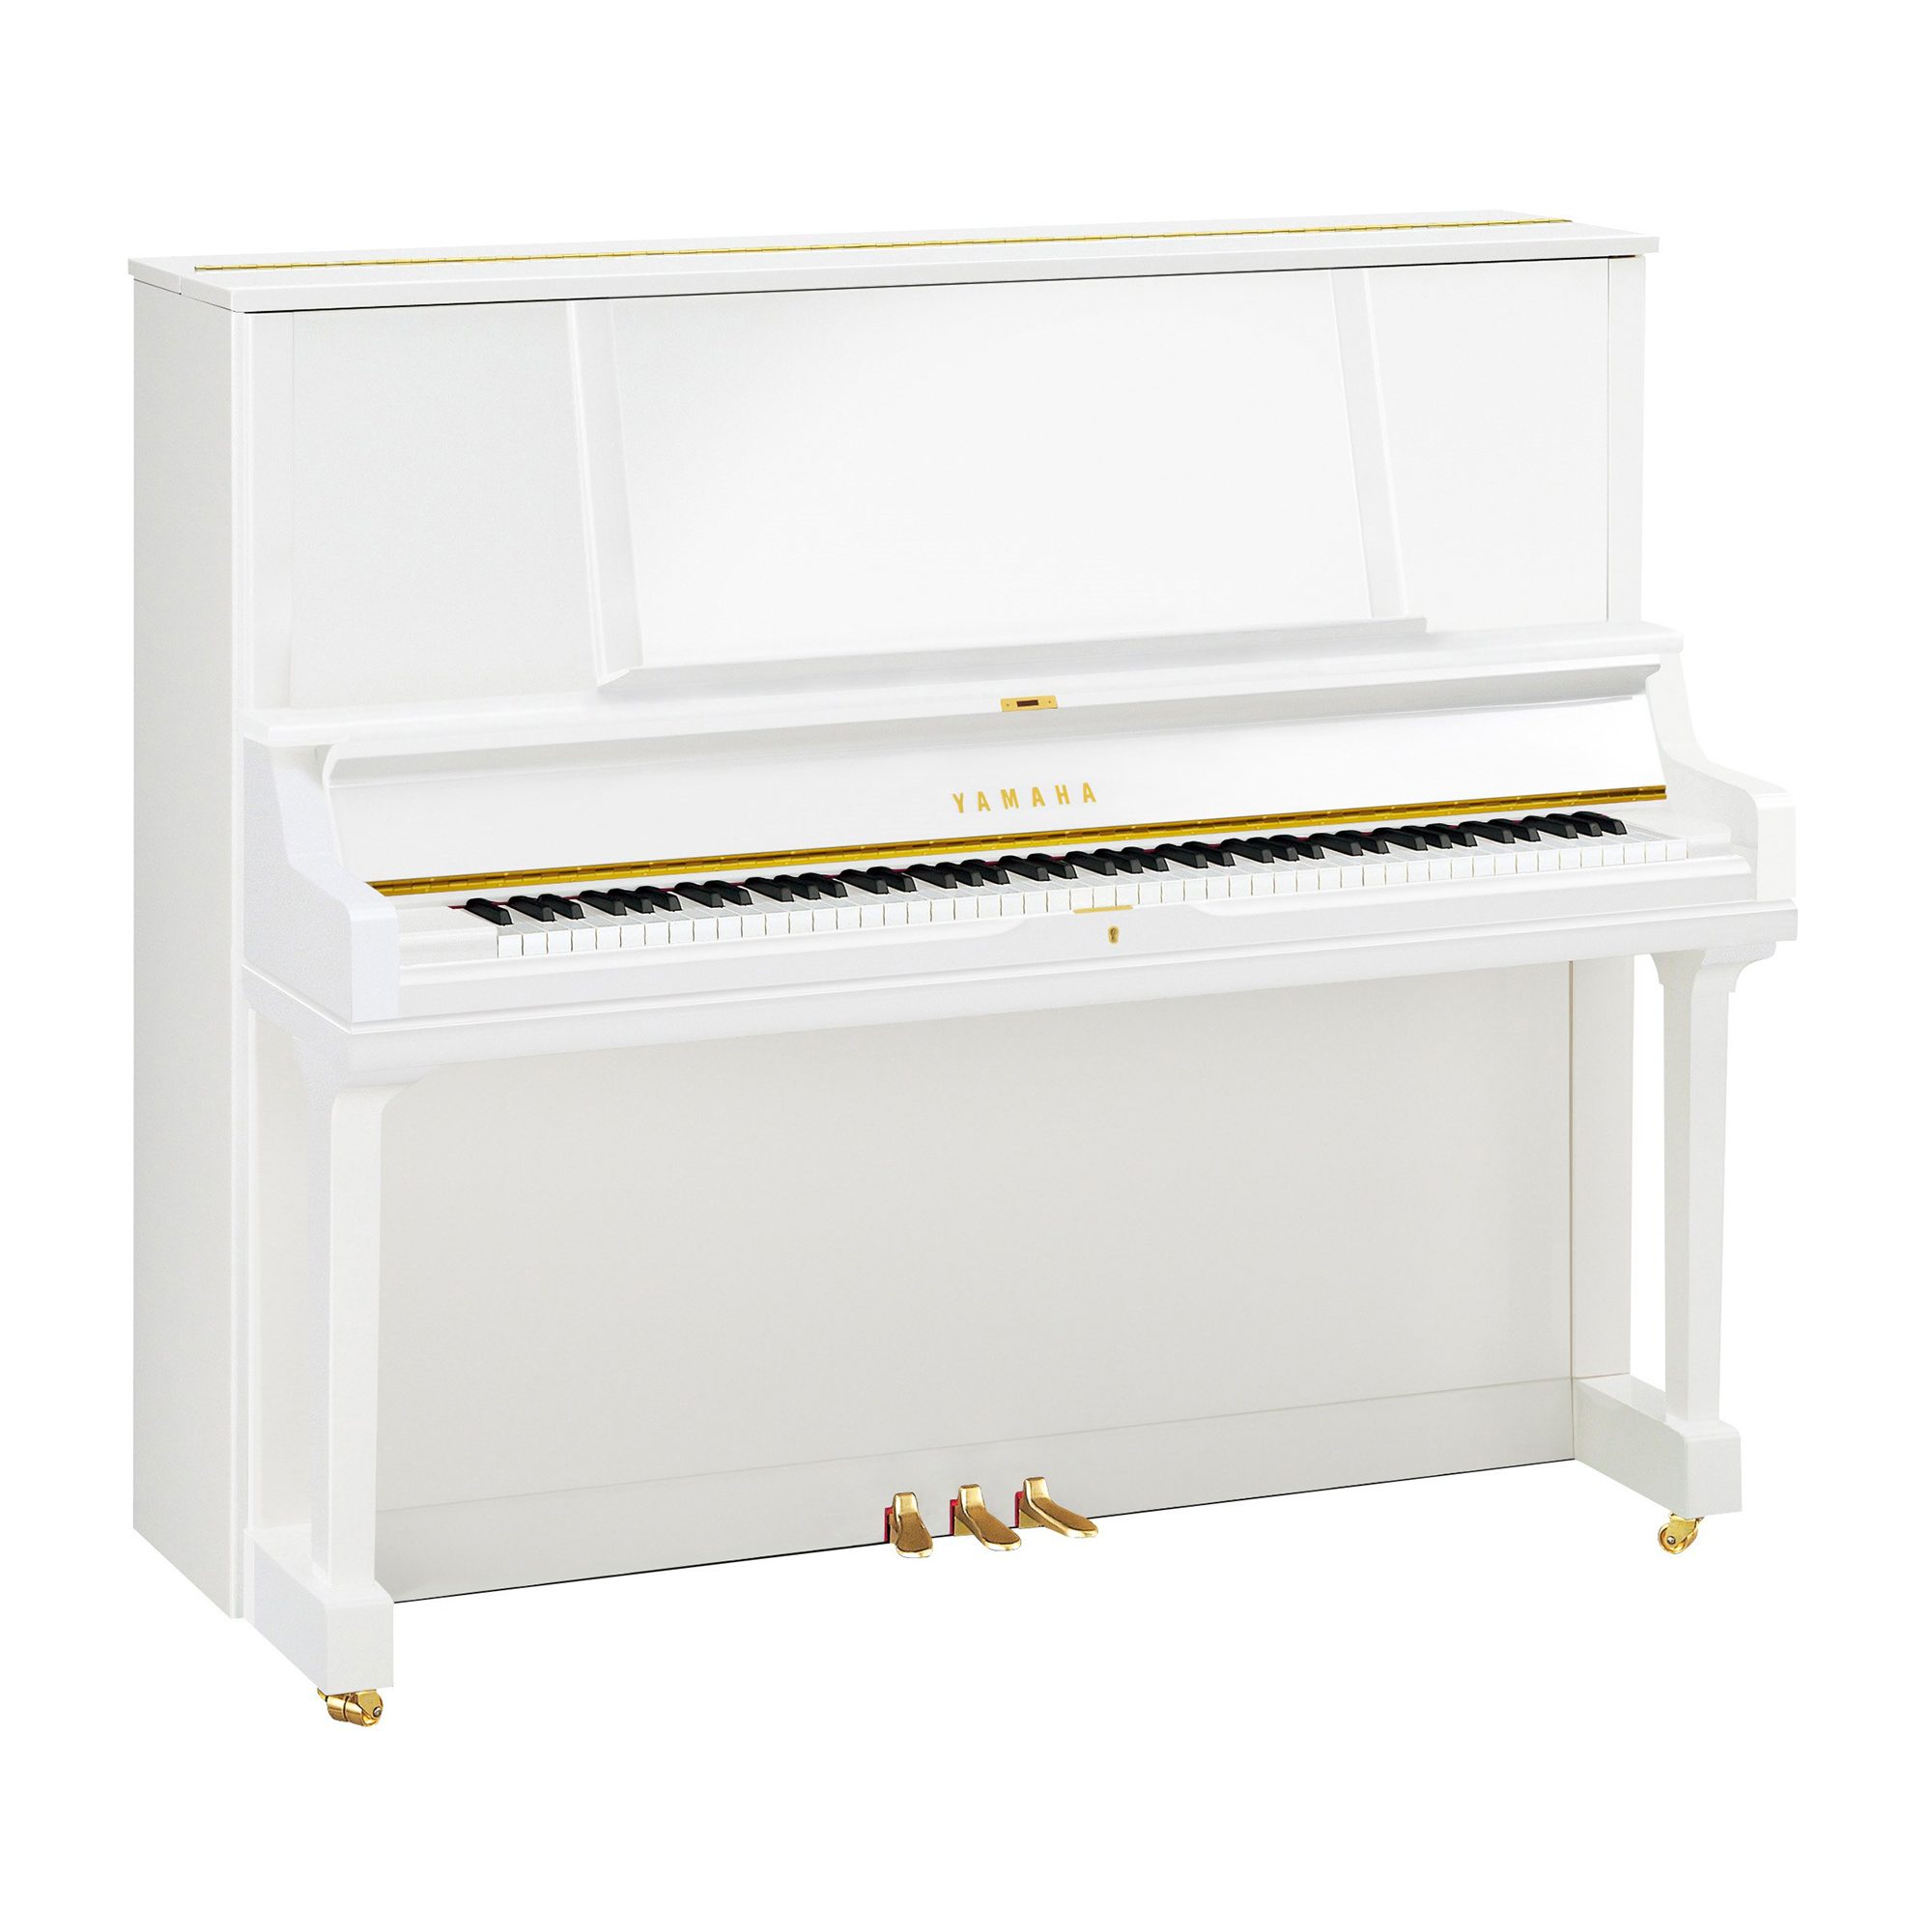 Series JU/JX - Descripción - PIANOS VERTICALES - Pianos